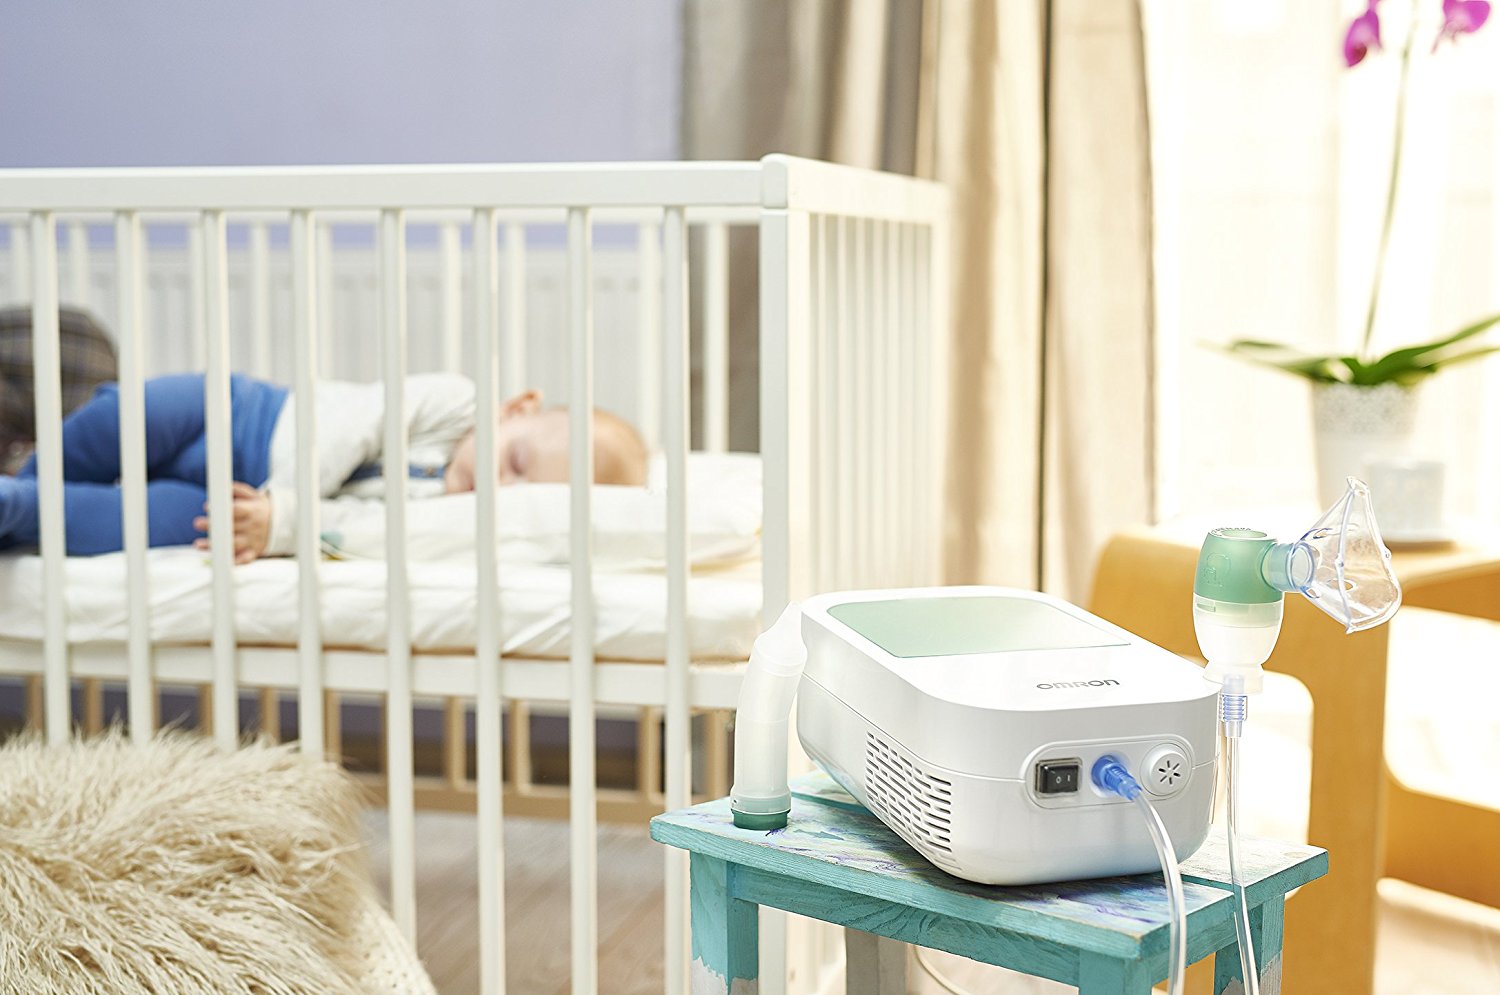 Recomandarea noastra: Aparat aerosoli OMRON DuoBaby, cu aspirator nazal, pentru bebelusi